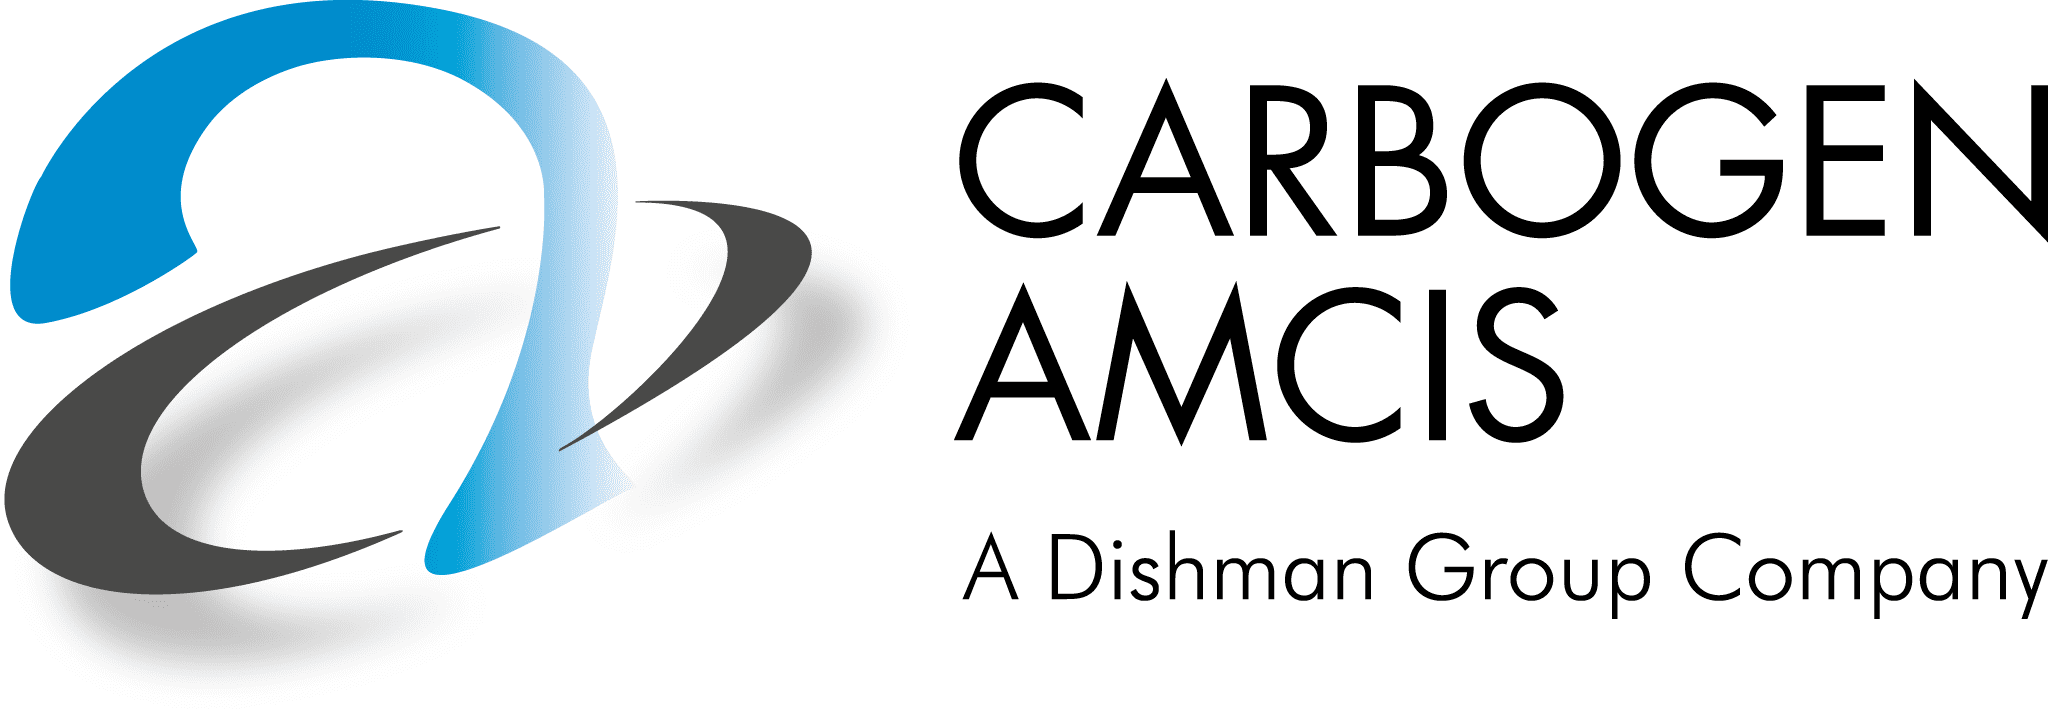 Carbogen-Amcis-Logo